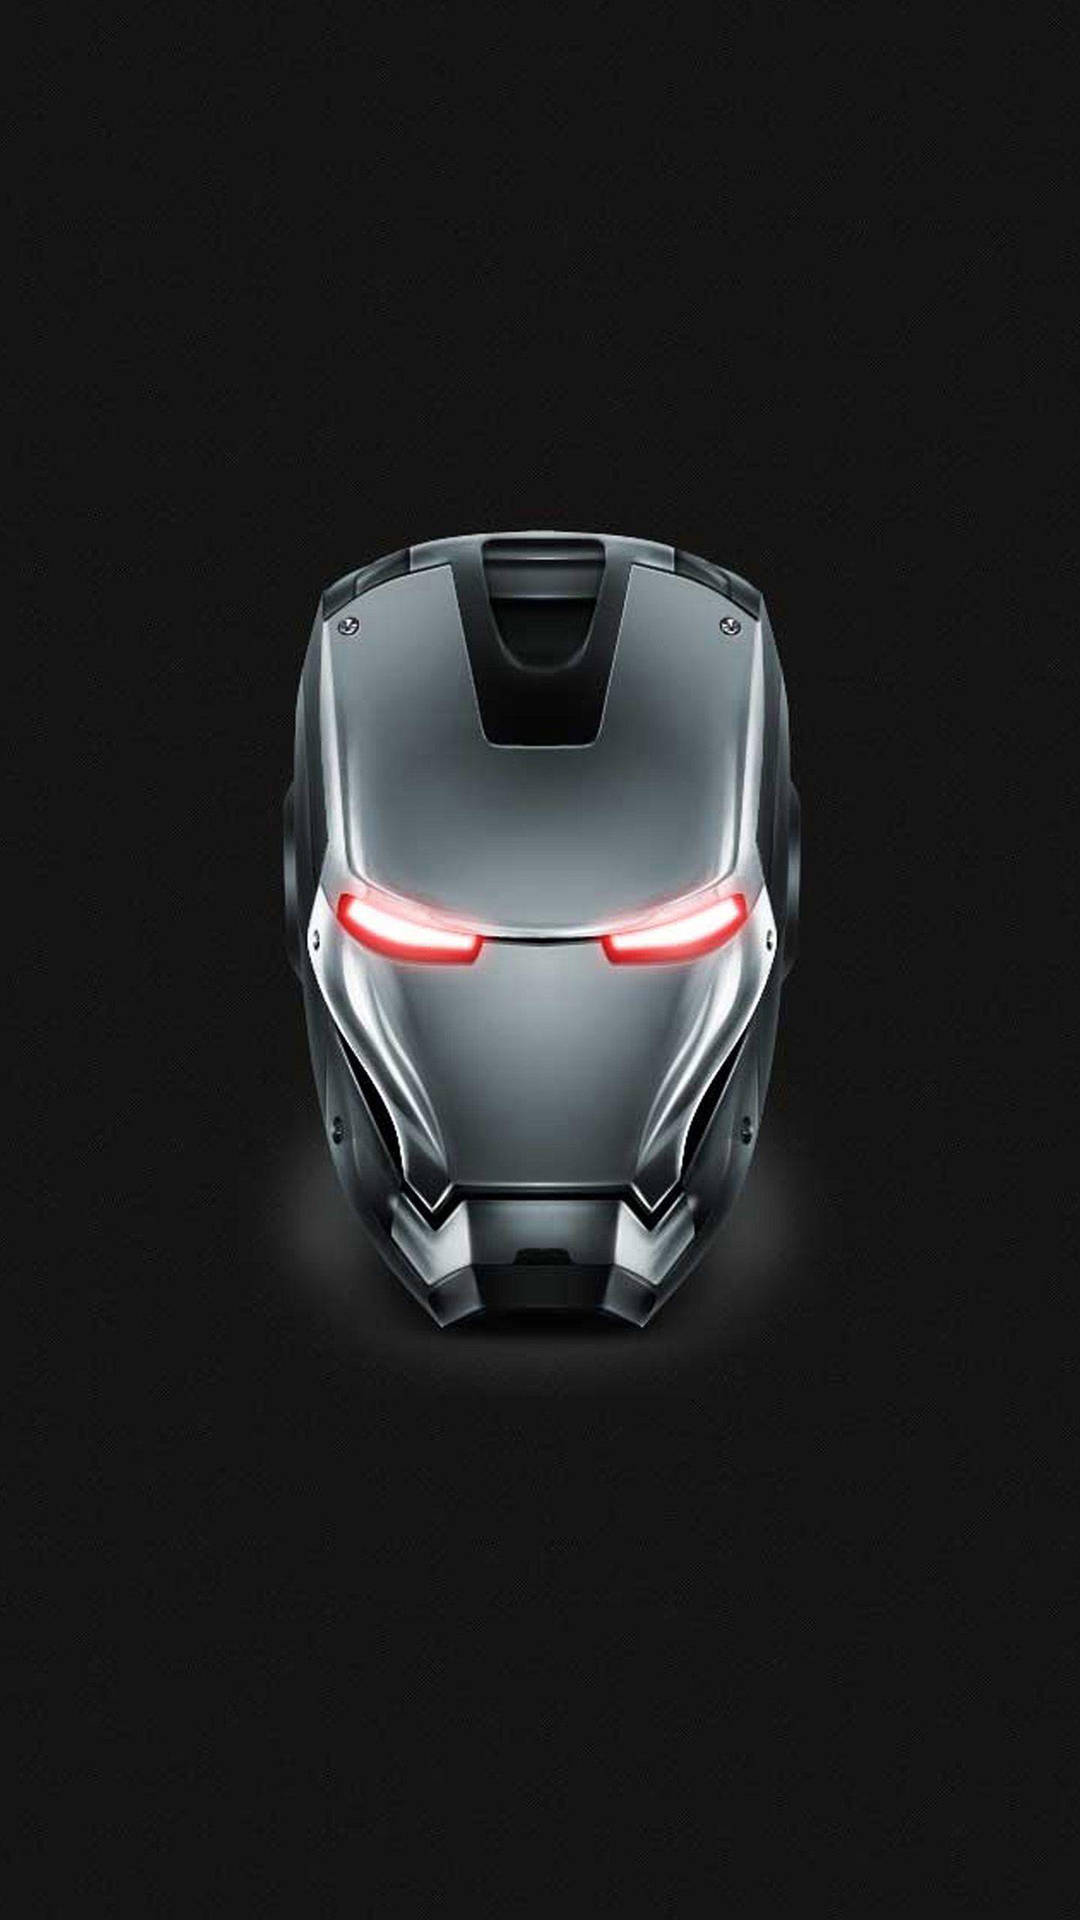 Warmachine-gesicht Iron Man Android Wallpaper